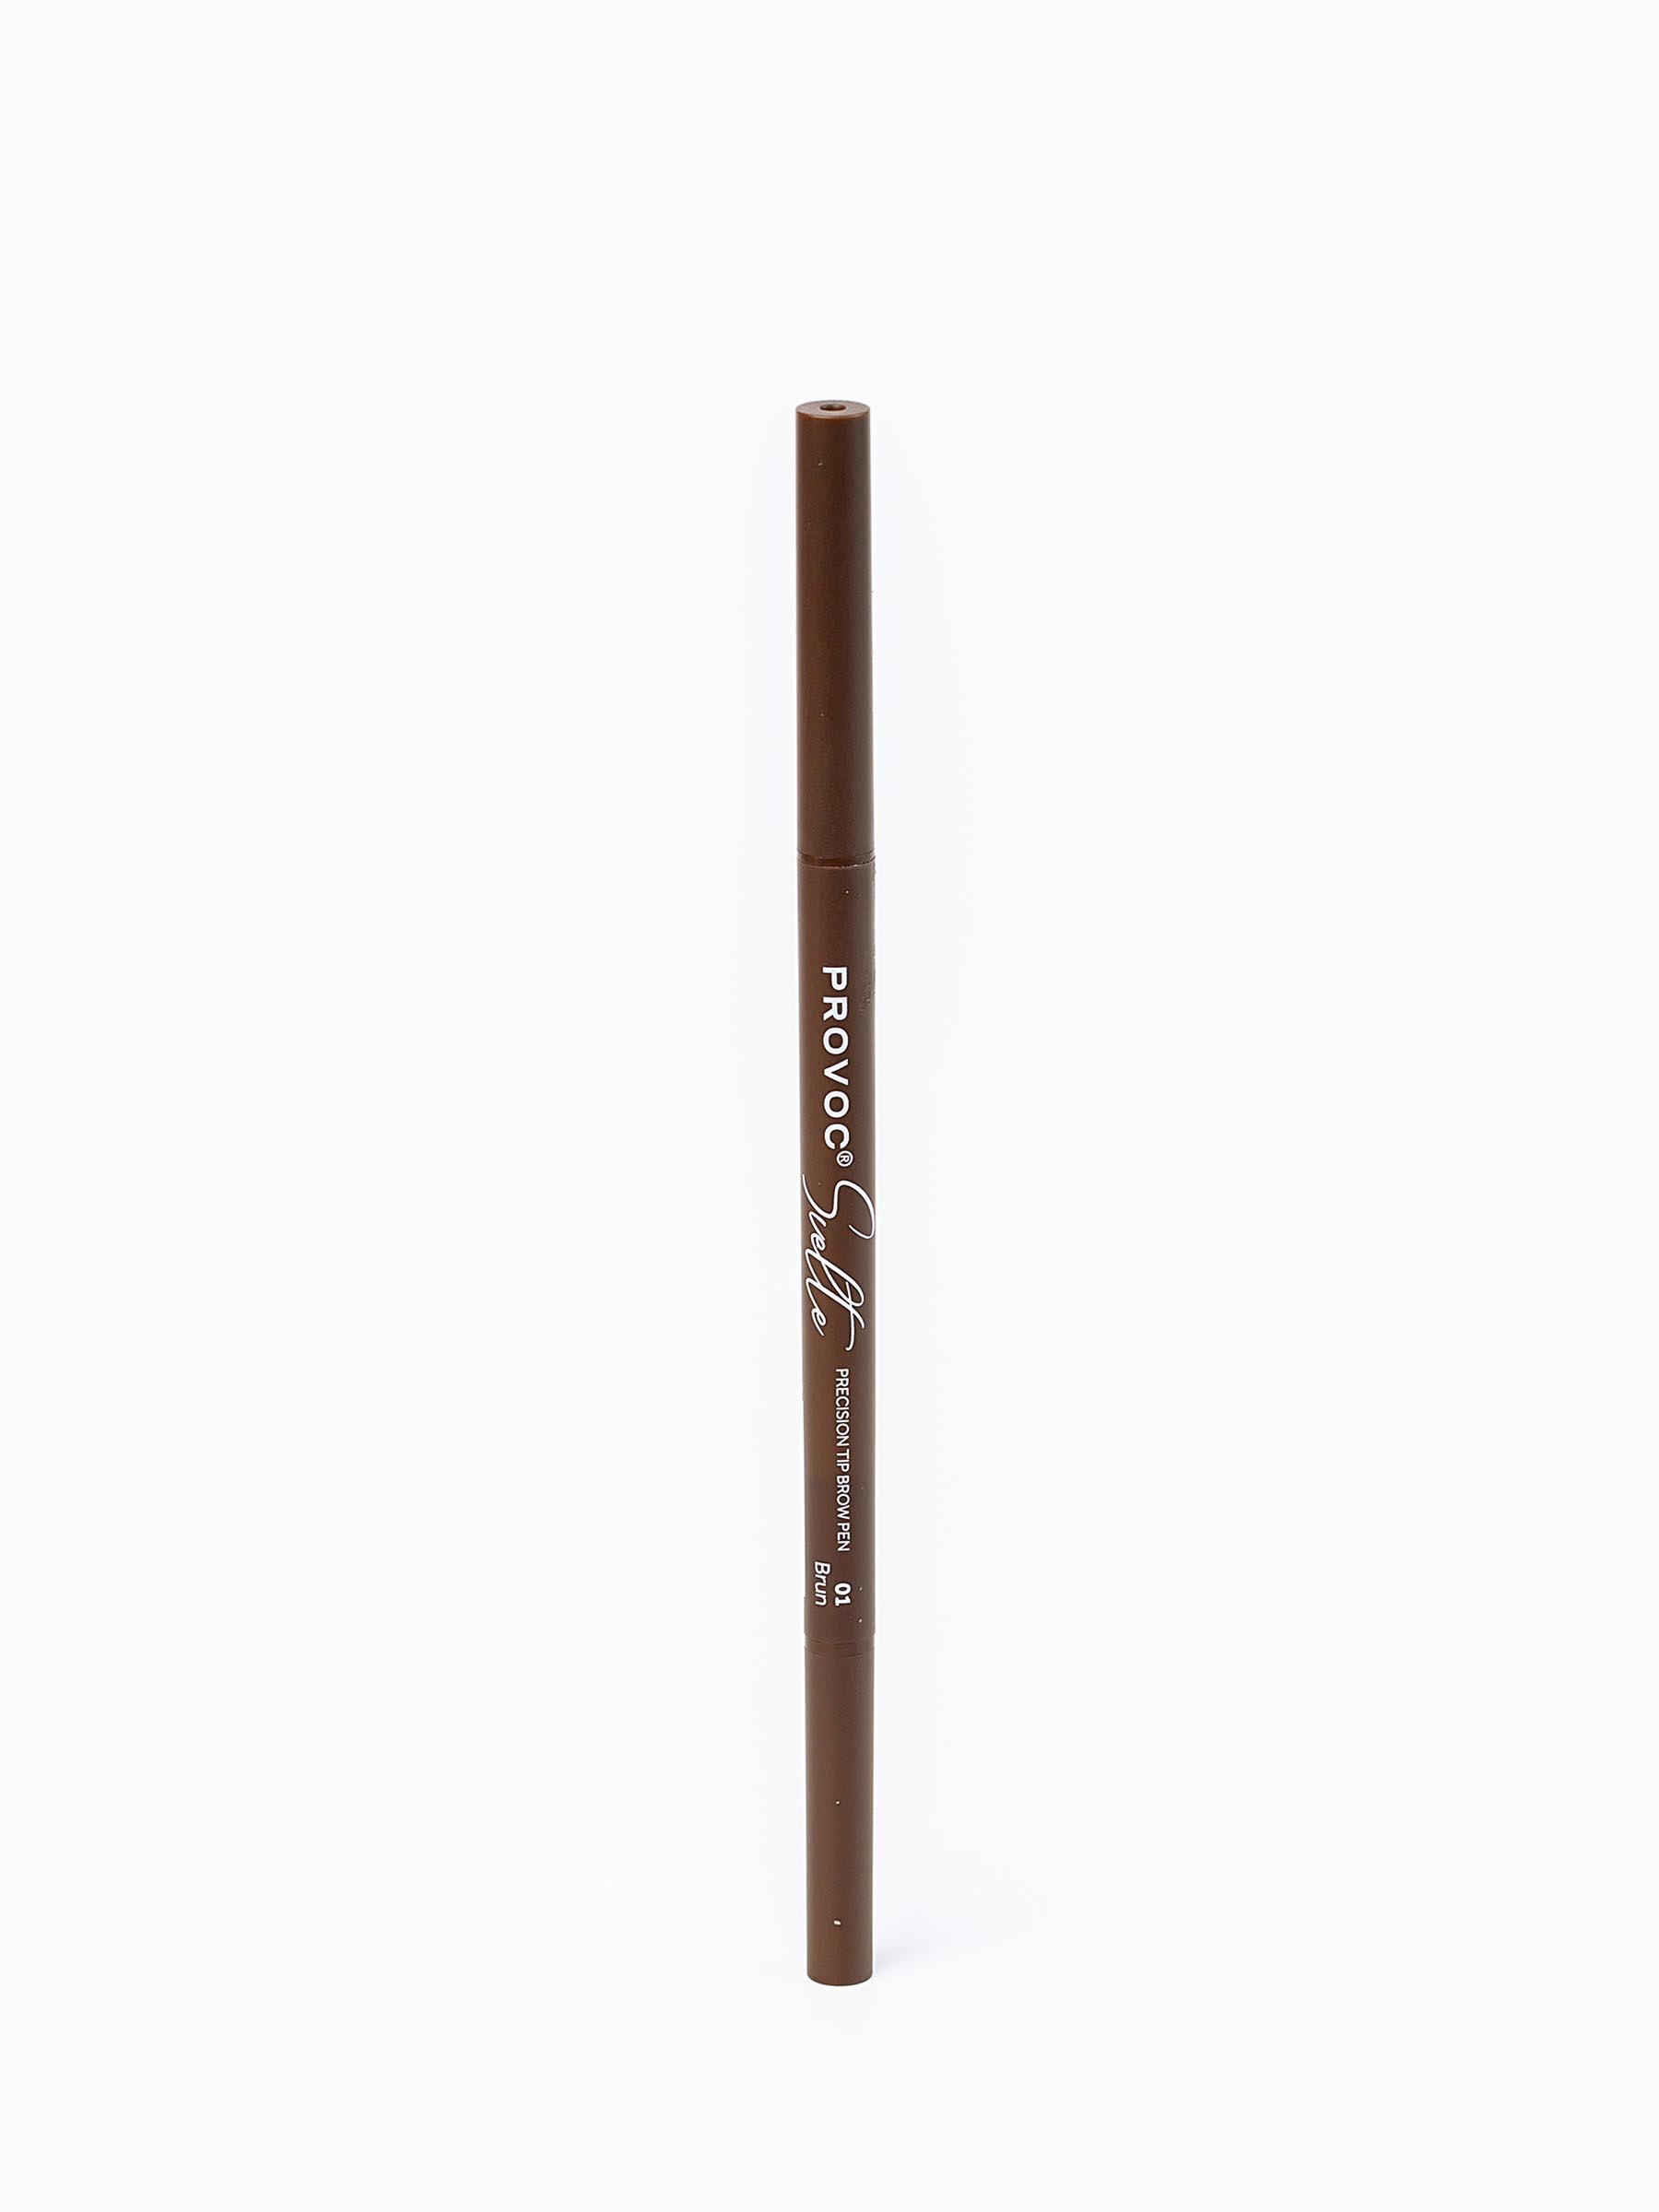 Ультратонкий карандаш для бровей Sawaya International LLC 01 коричневый карандаш для губ influence beauty ximera автоматический тон 02 бежево коричневый 0 28 г